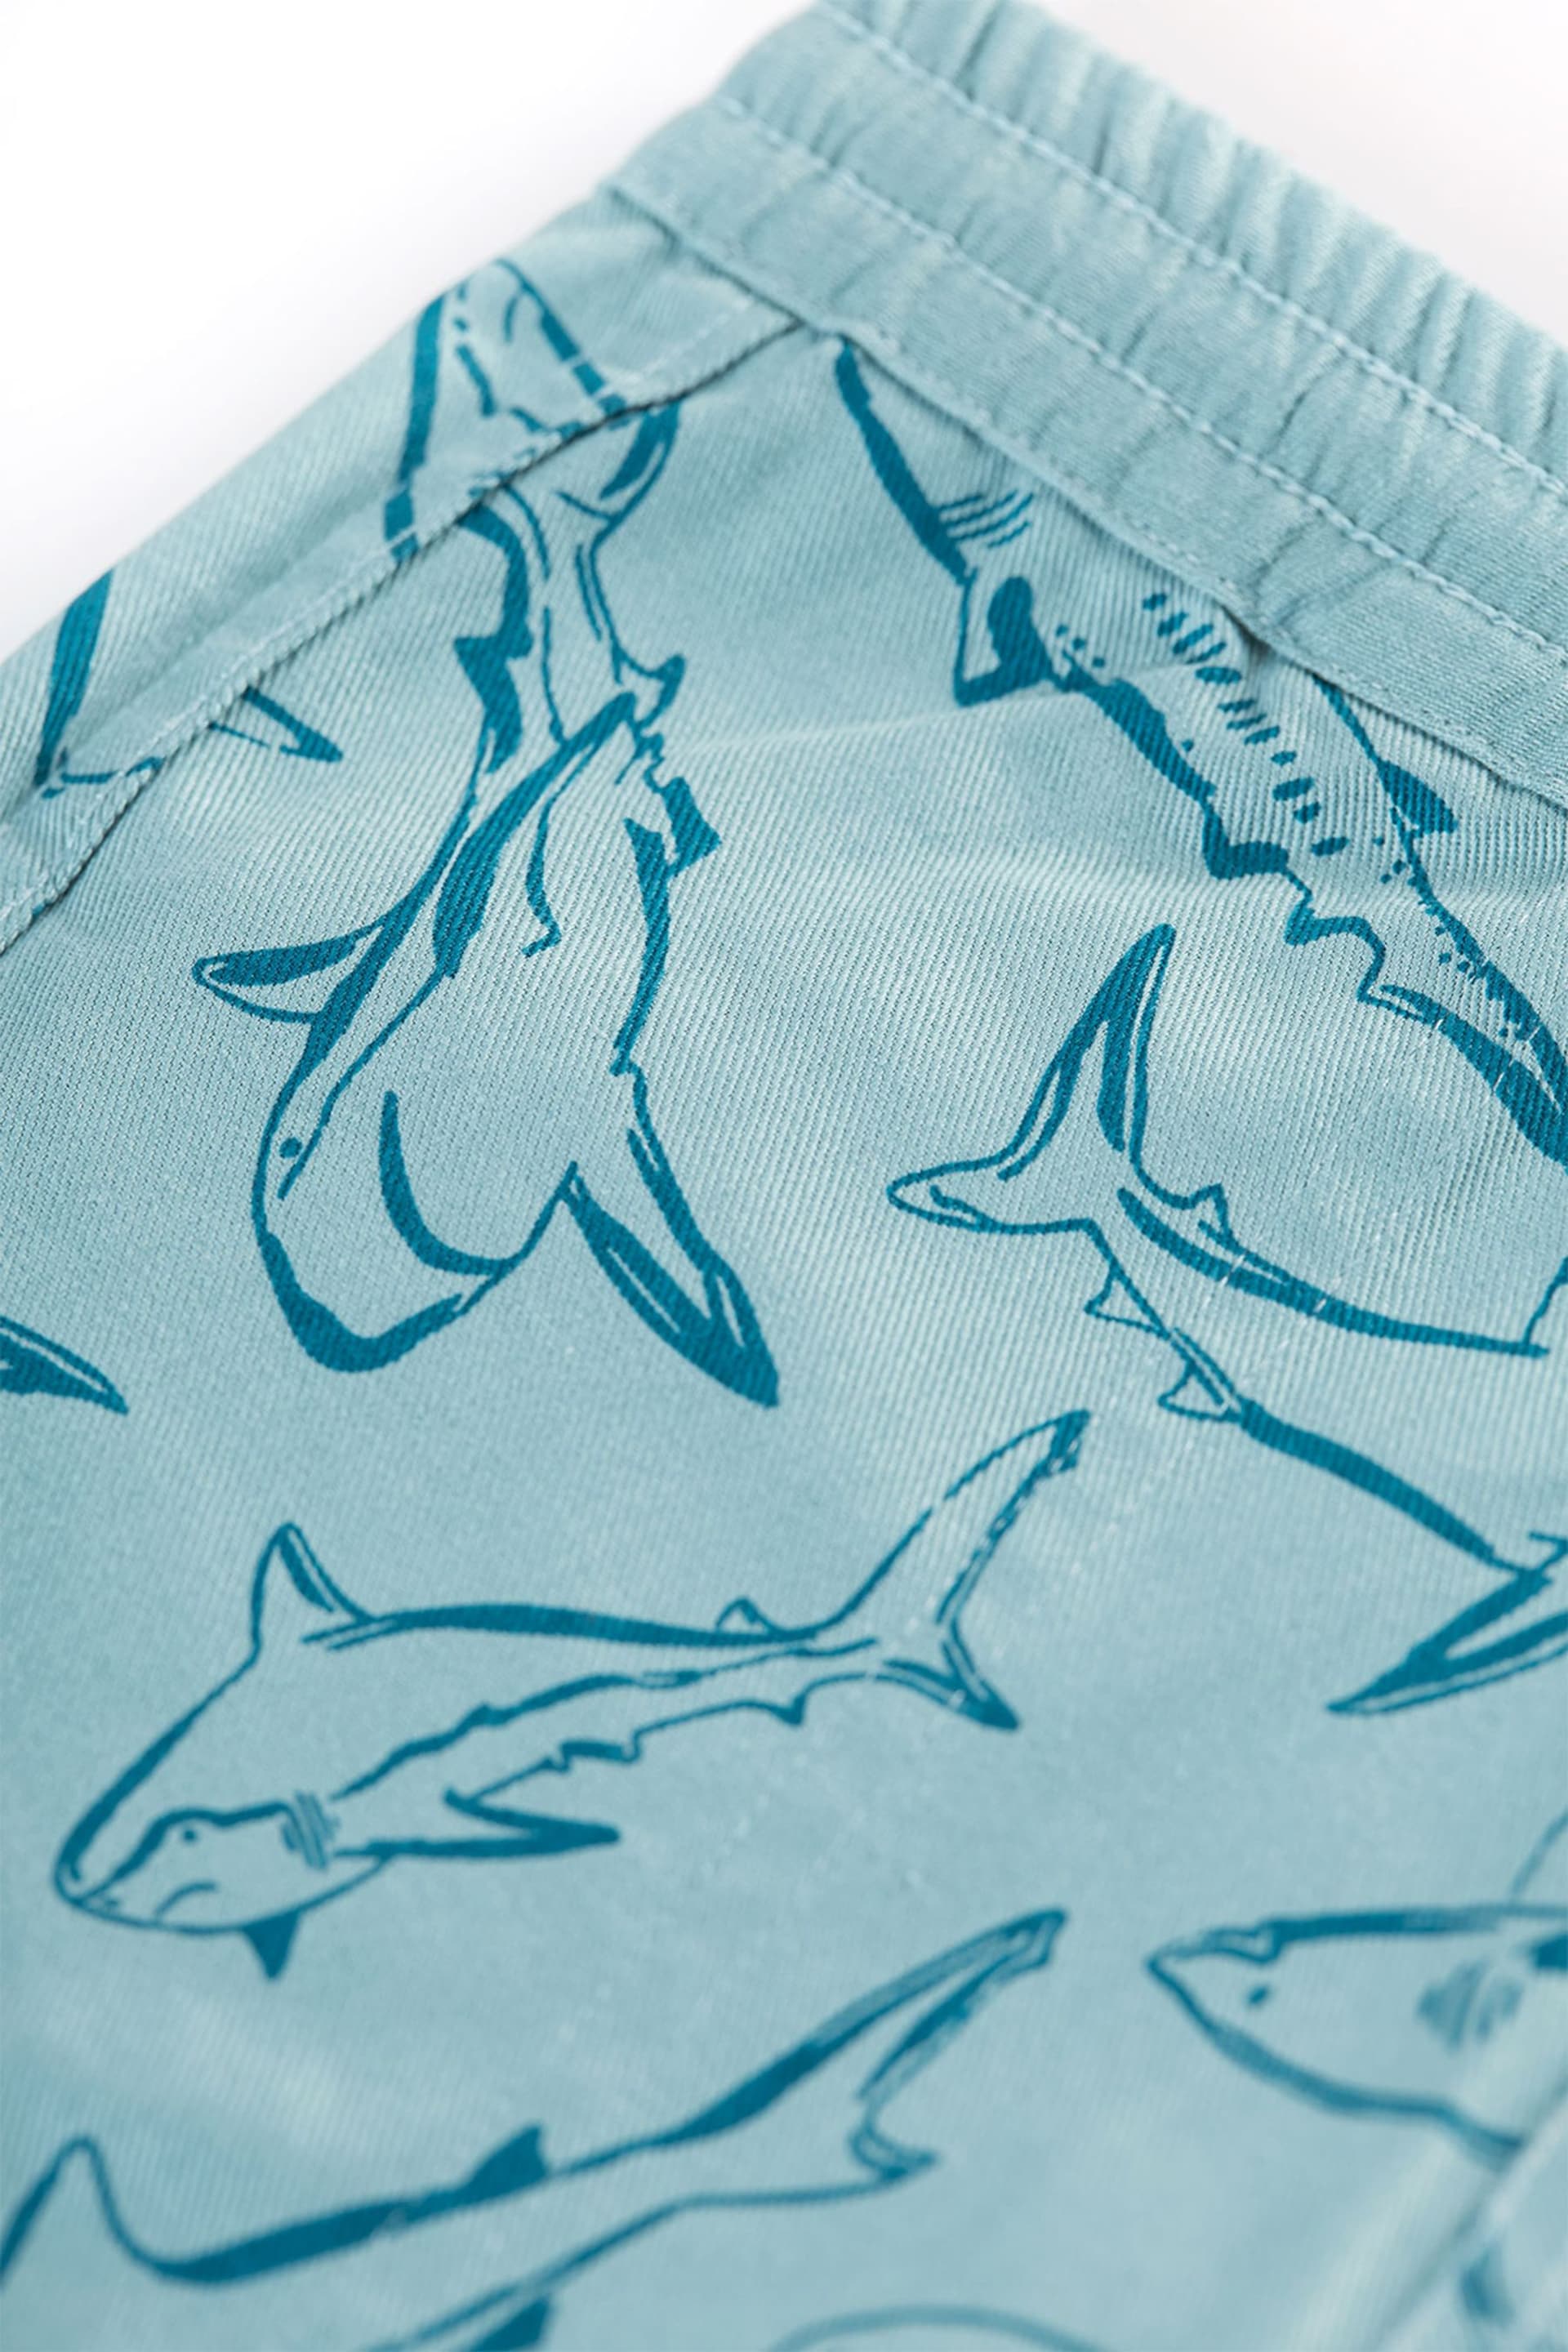 Frugi Blue Reversible Shark Shorts - Image 7 of 7